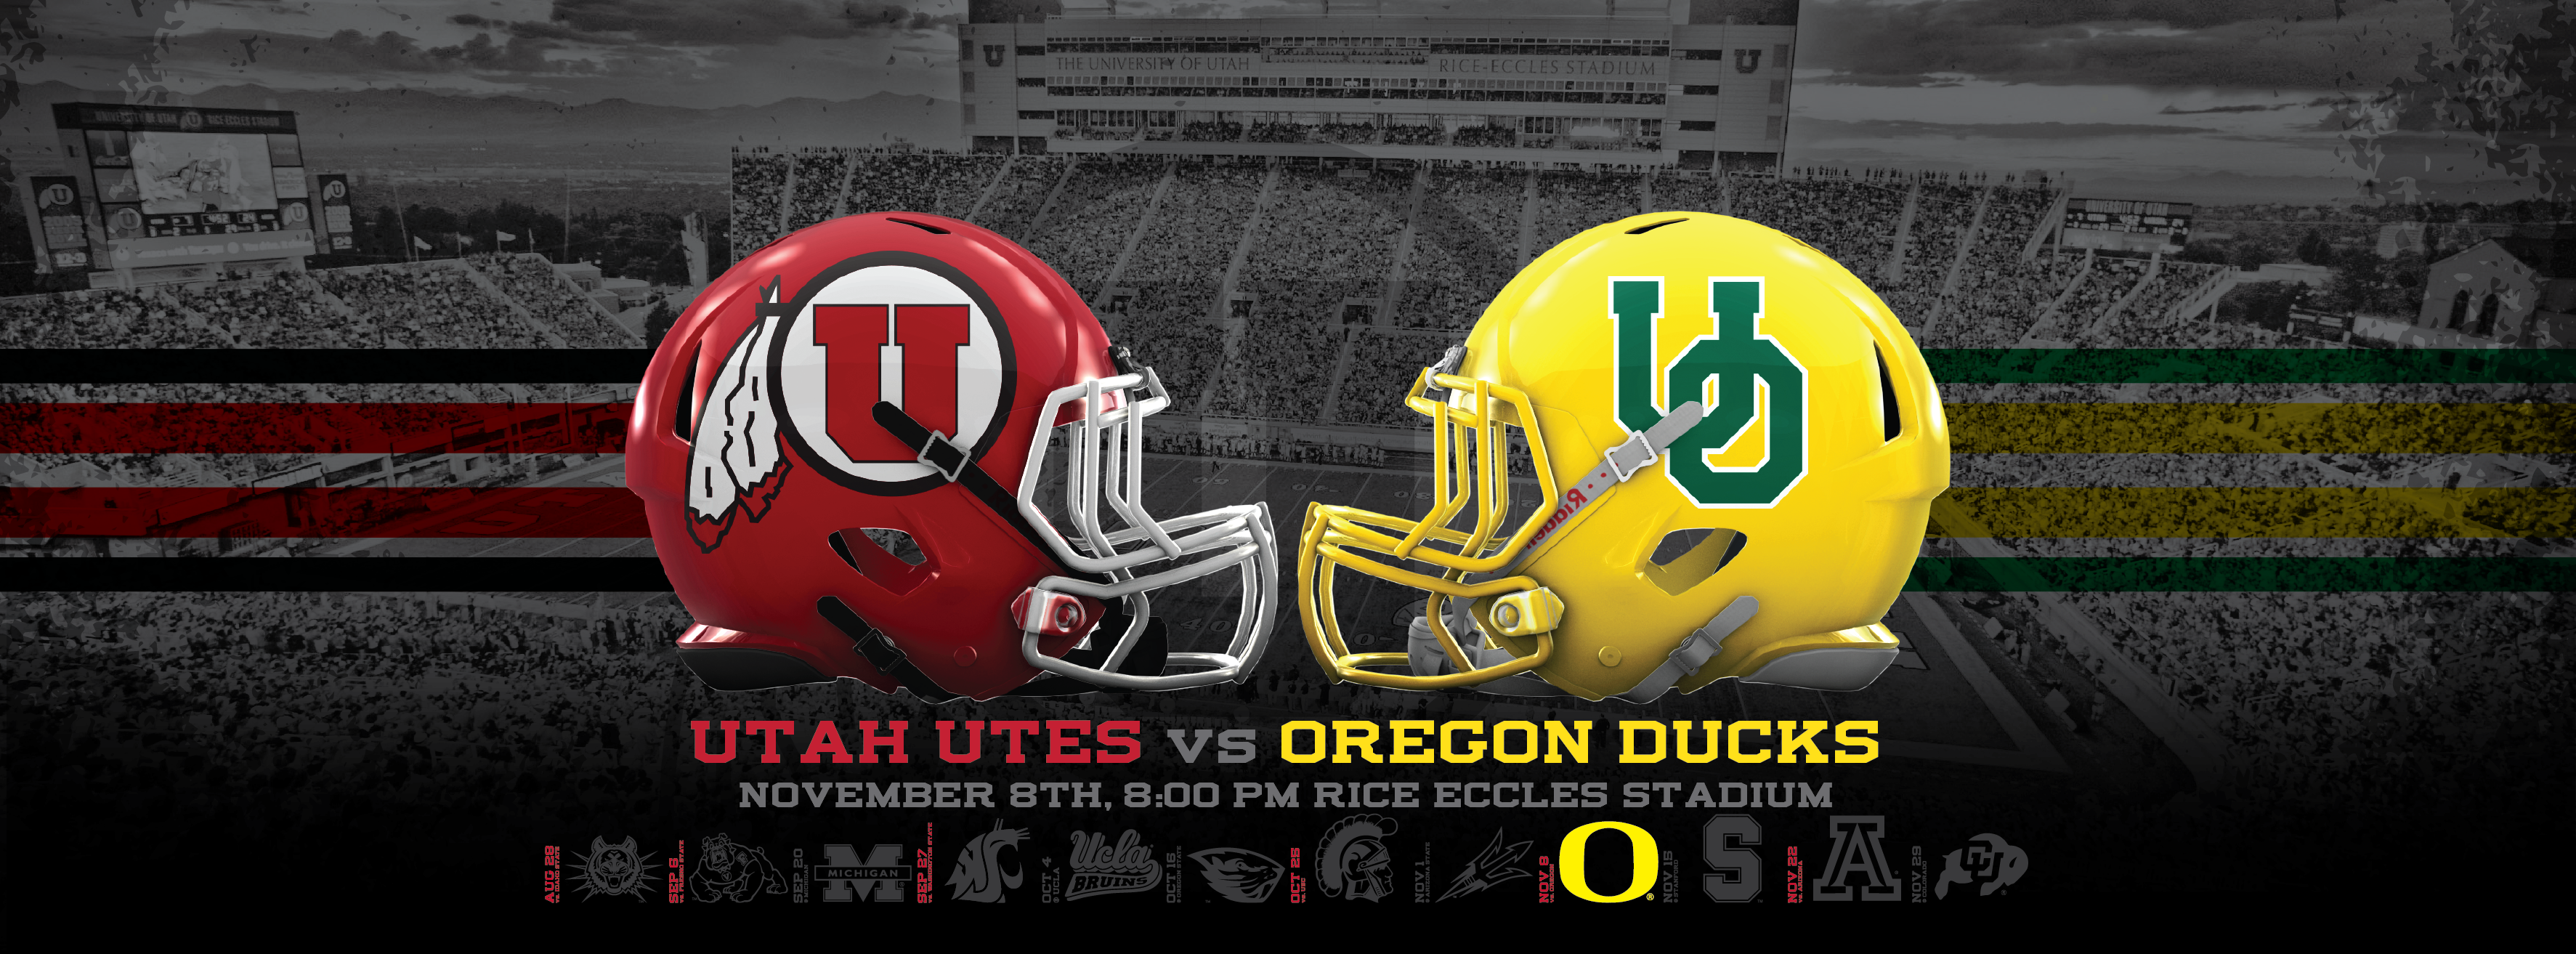 Utah Utes Vs Oregon Ducks Wallpaper Dahlelama